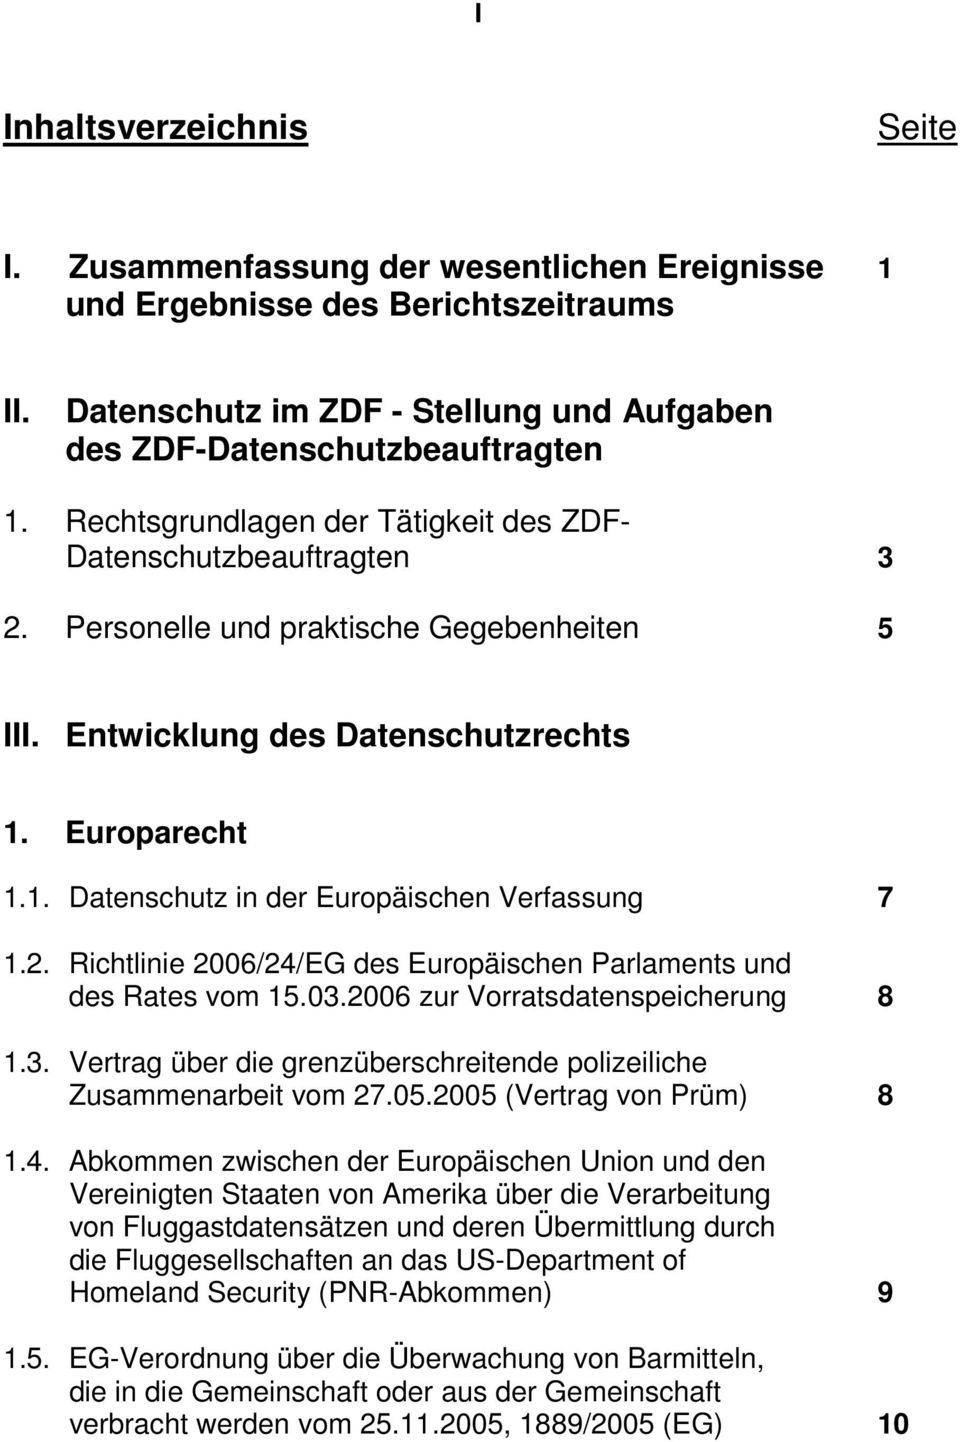 2. Richtlinie 2006/24/EG des Europäischen Parlaments und des Rates vom 15.03.2006 zur Vorratsdatenspeicherung 8 1.3. Vertrag über die grenzüberschreitende polizeiliche Zusammenarbeit vom 27.05.